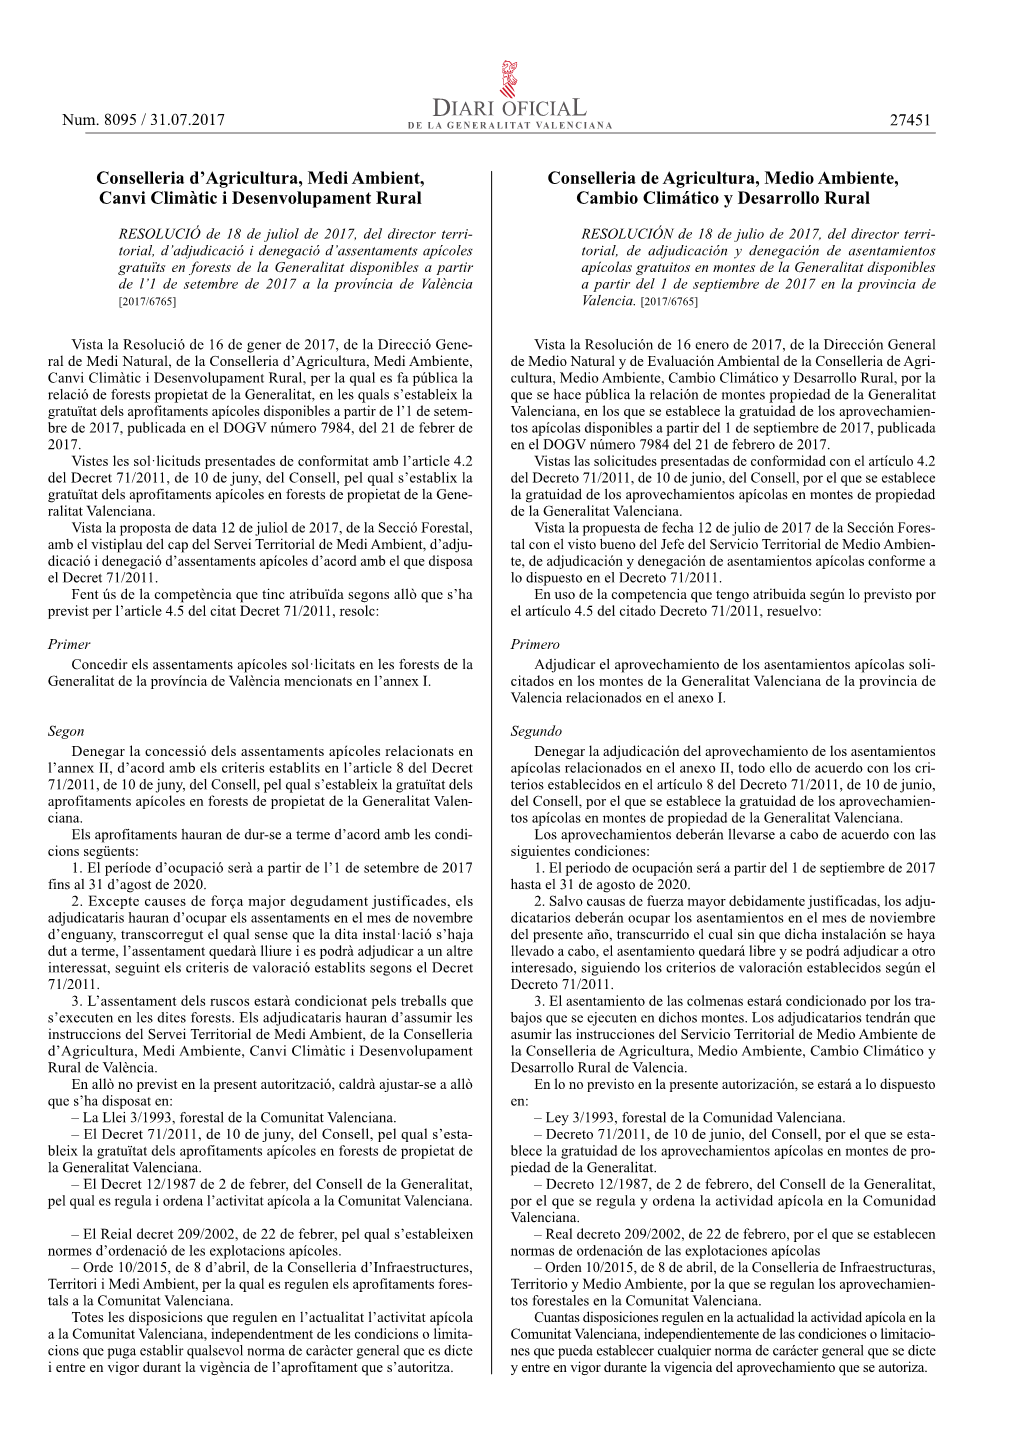 Adjudicación Y Denegación De Asentamientos Apícolas Conforme a El Decret 71/2011